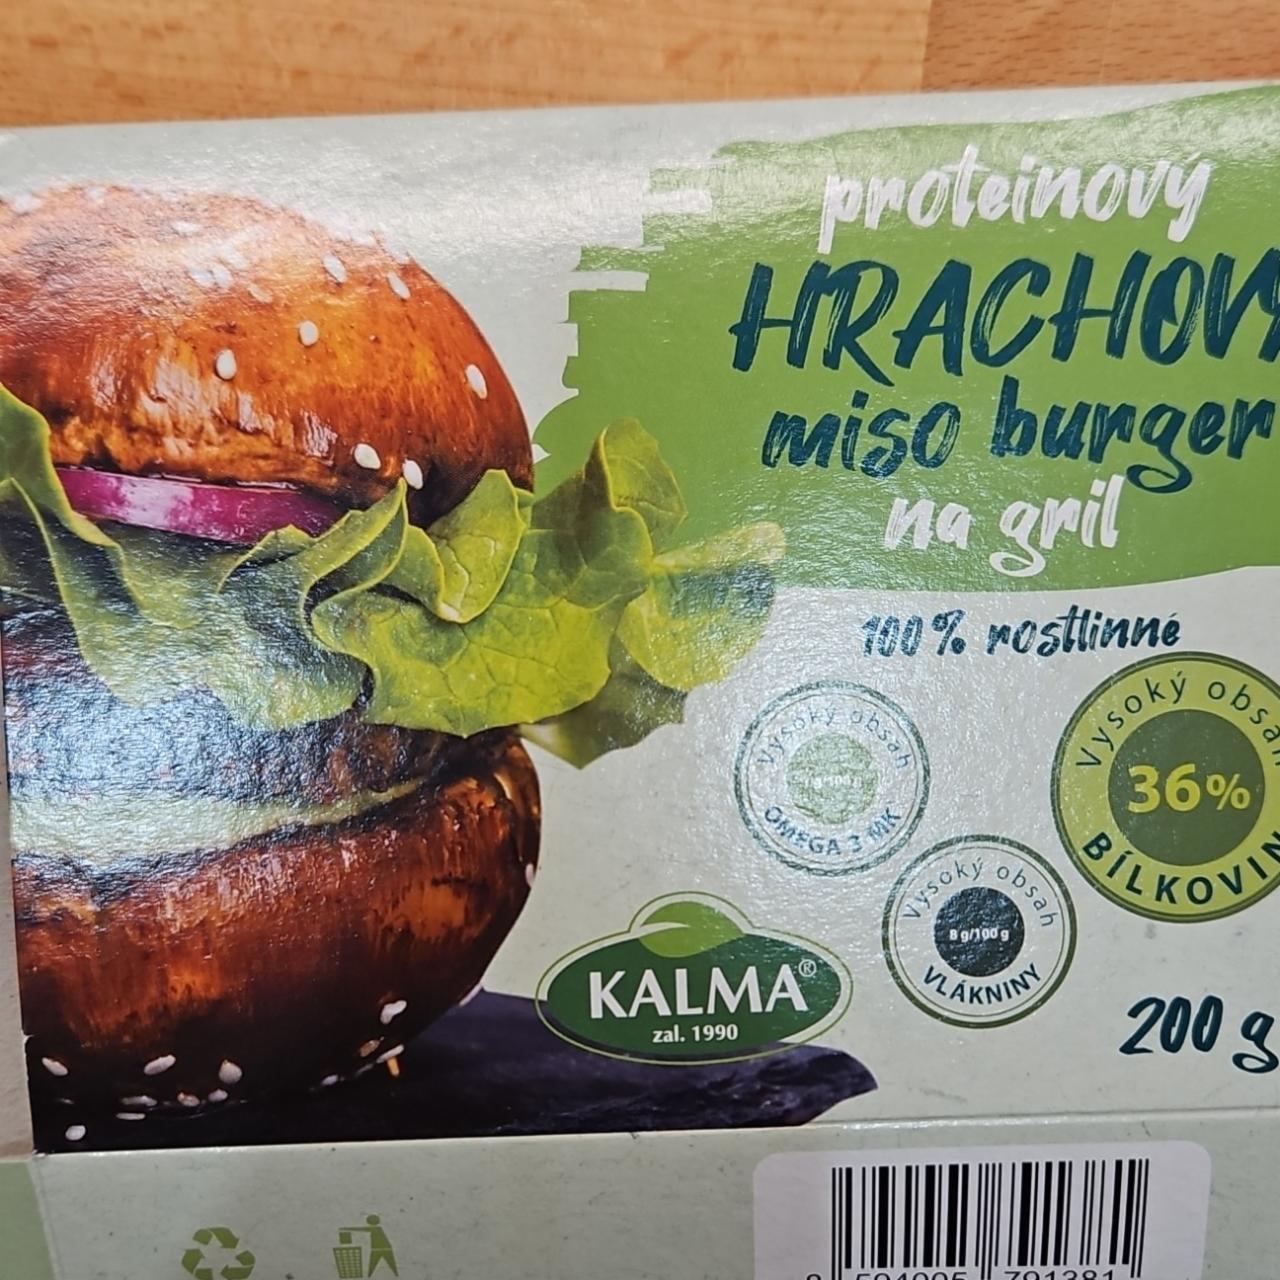 Fotografie - Proteinový hrachový miso burger Kalma